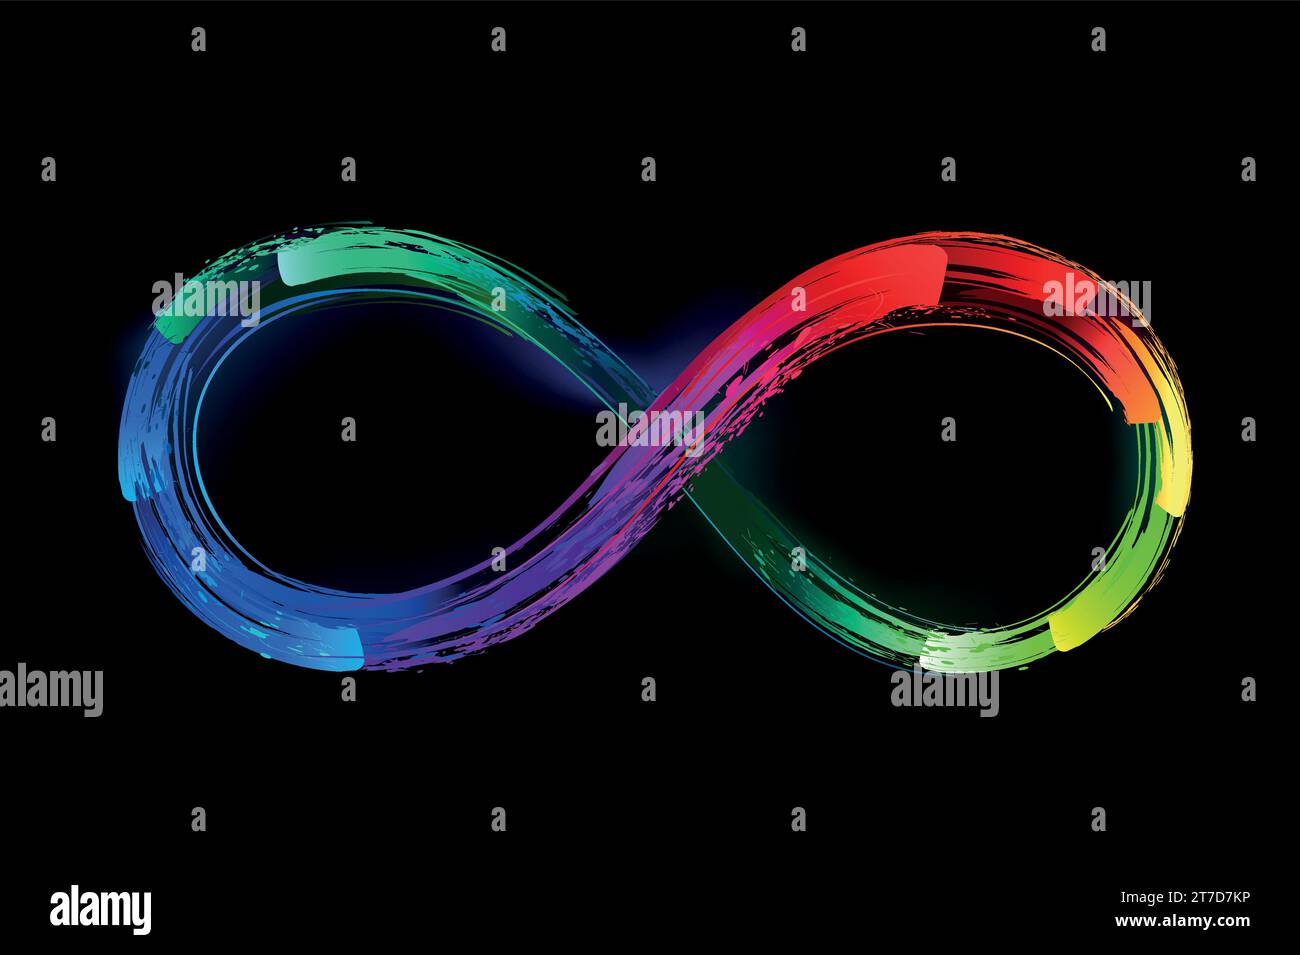 Helles, mehrfarbiges Infinity-Symbol, gemalt mit fluoreszierenden Farben, alle Farben des Regenbogens. Glühende Farbe. Stock Vektor